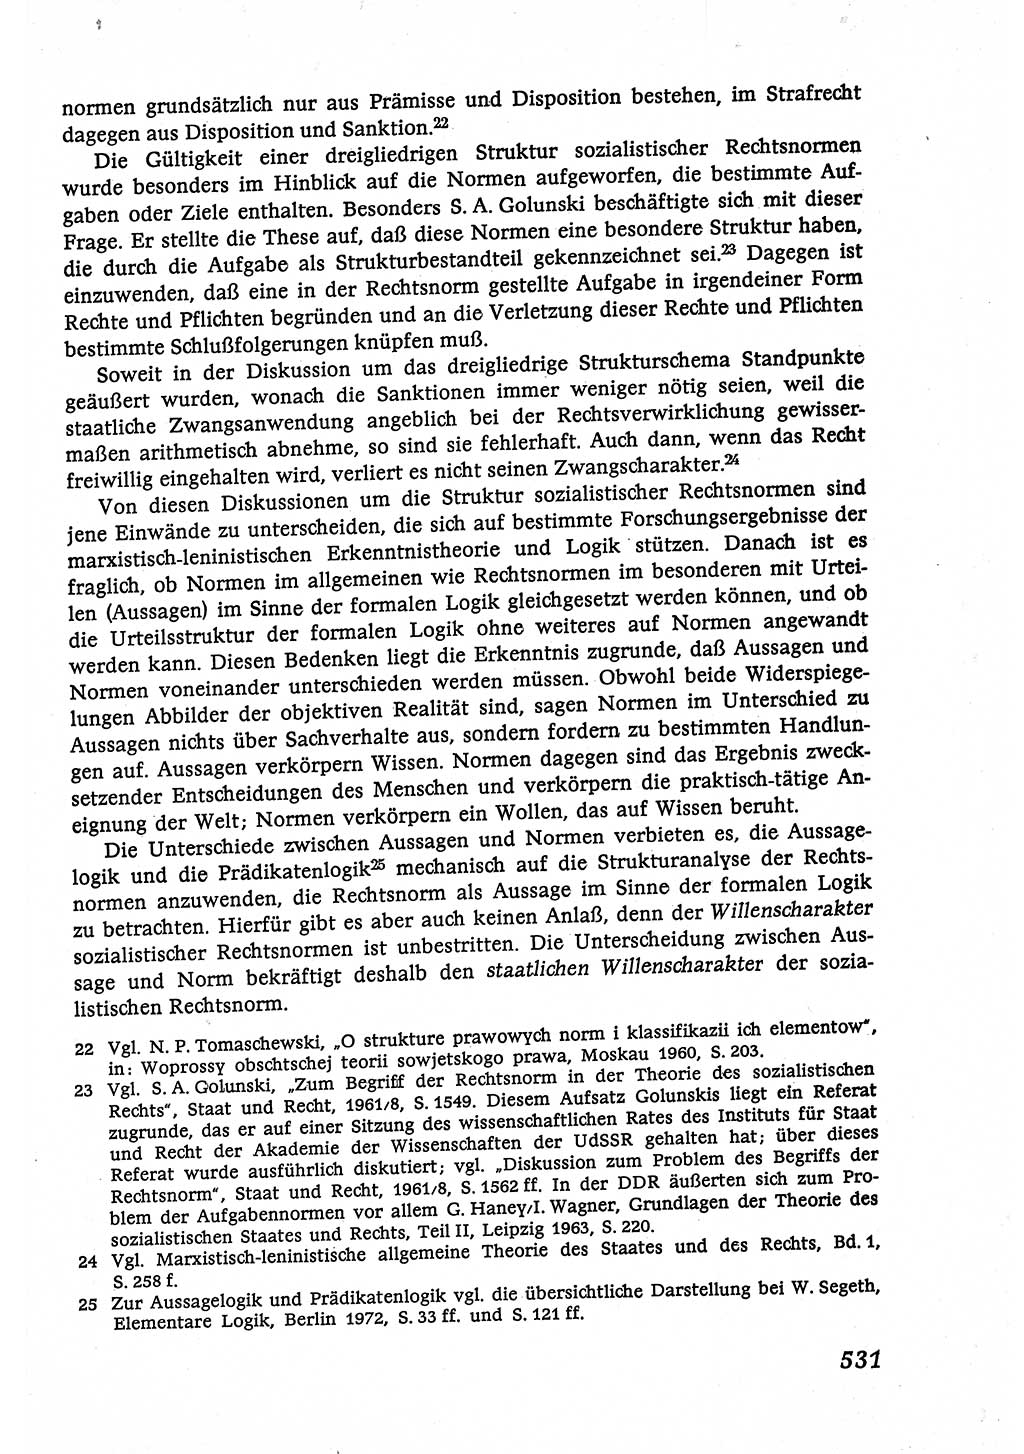 Marxistisch-leninistische (ML) Staats- und Rechtstheorie [Deutsche Demokratische Republik (DDR)], Lehrbuch 1980, Seite 531 (ML St.-R.-Th. DDR Lb. 1980, S. 531)